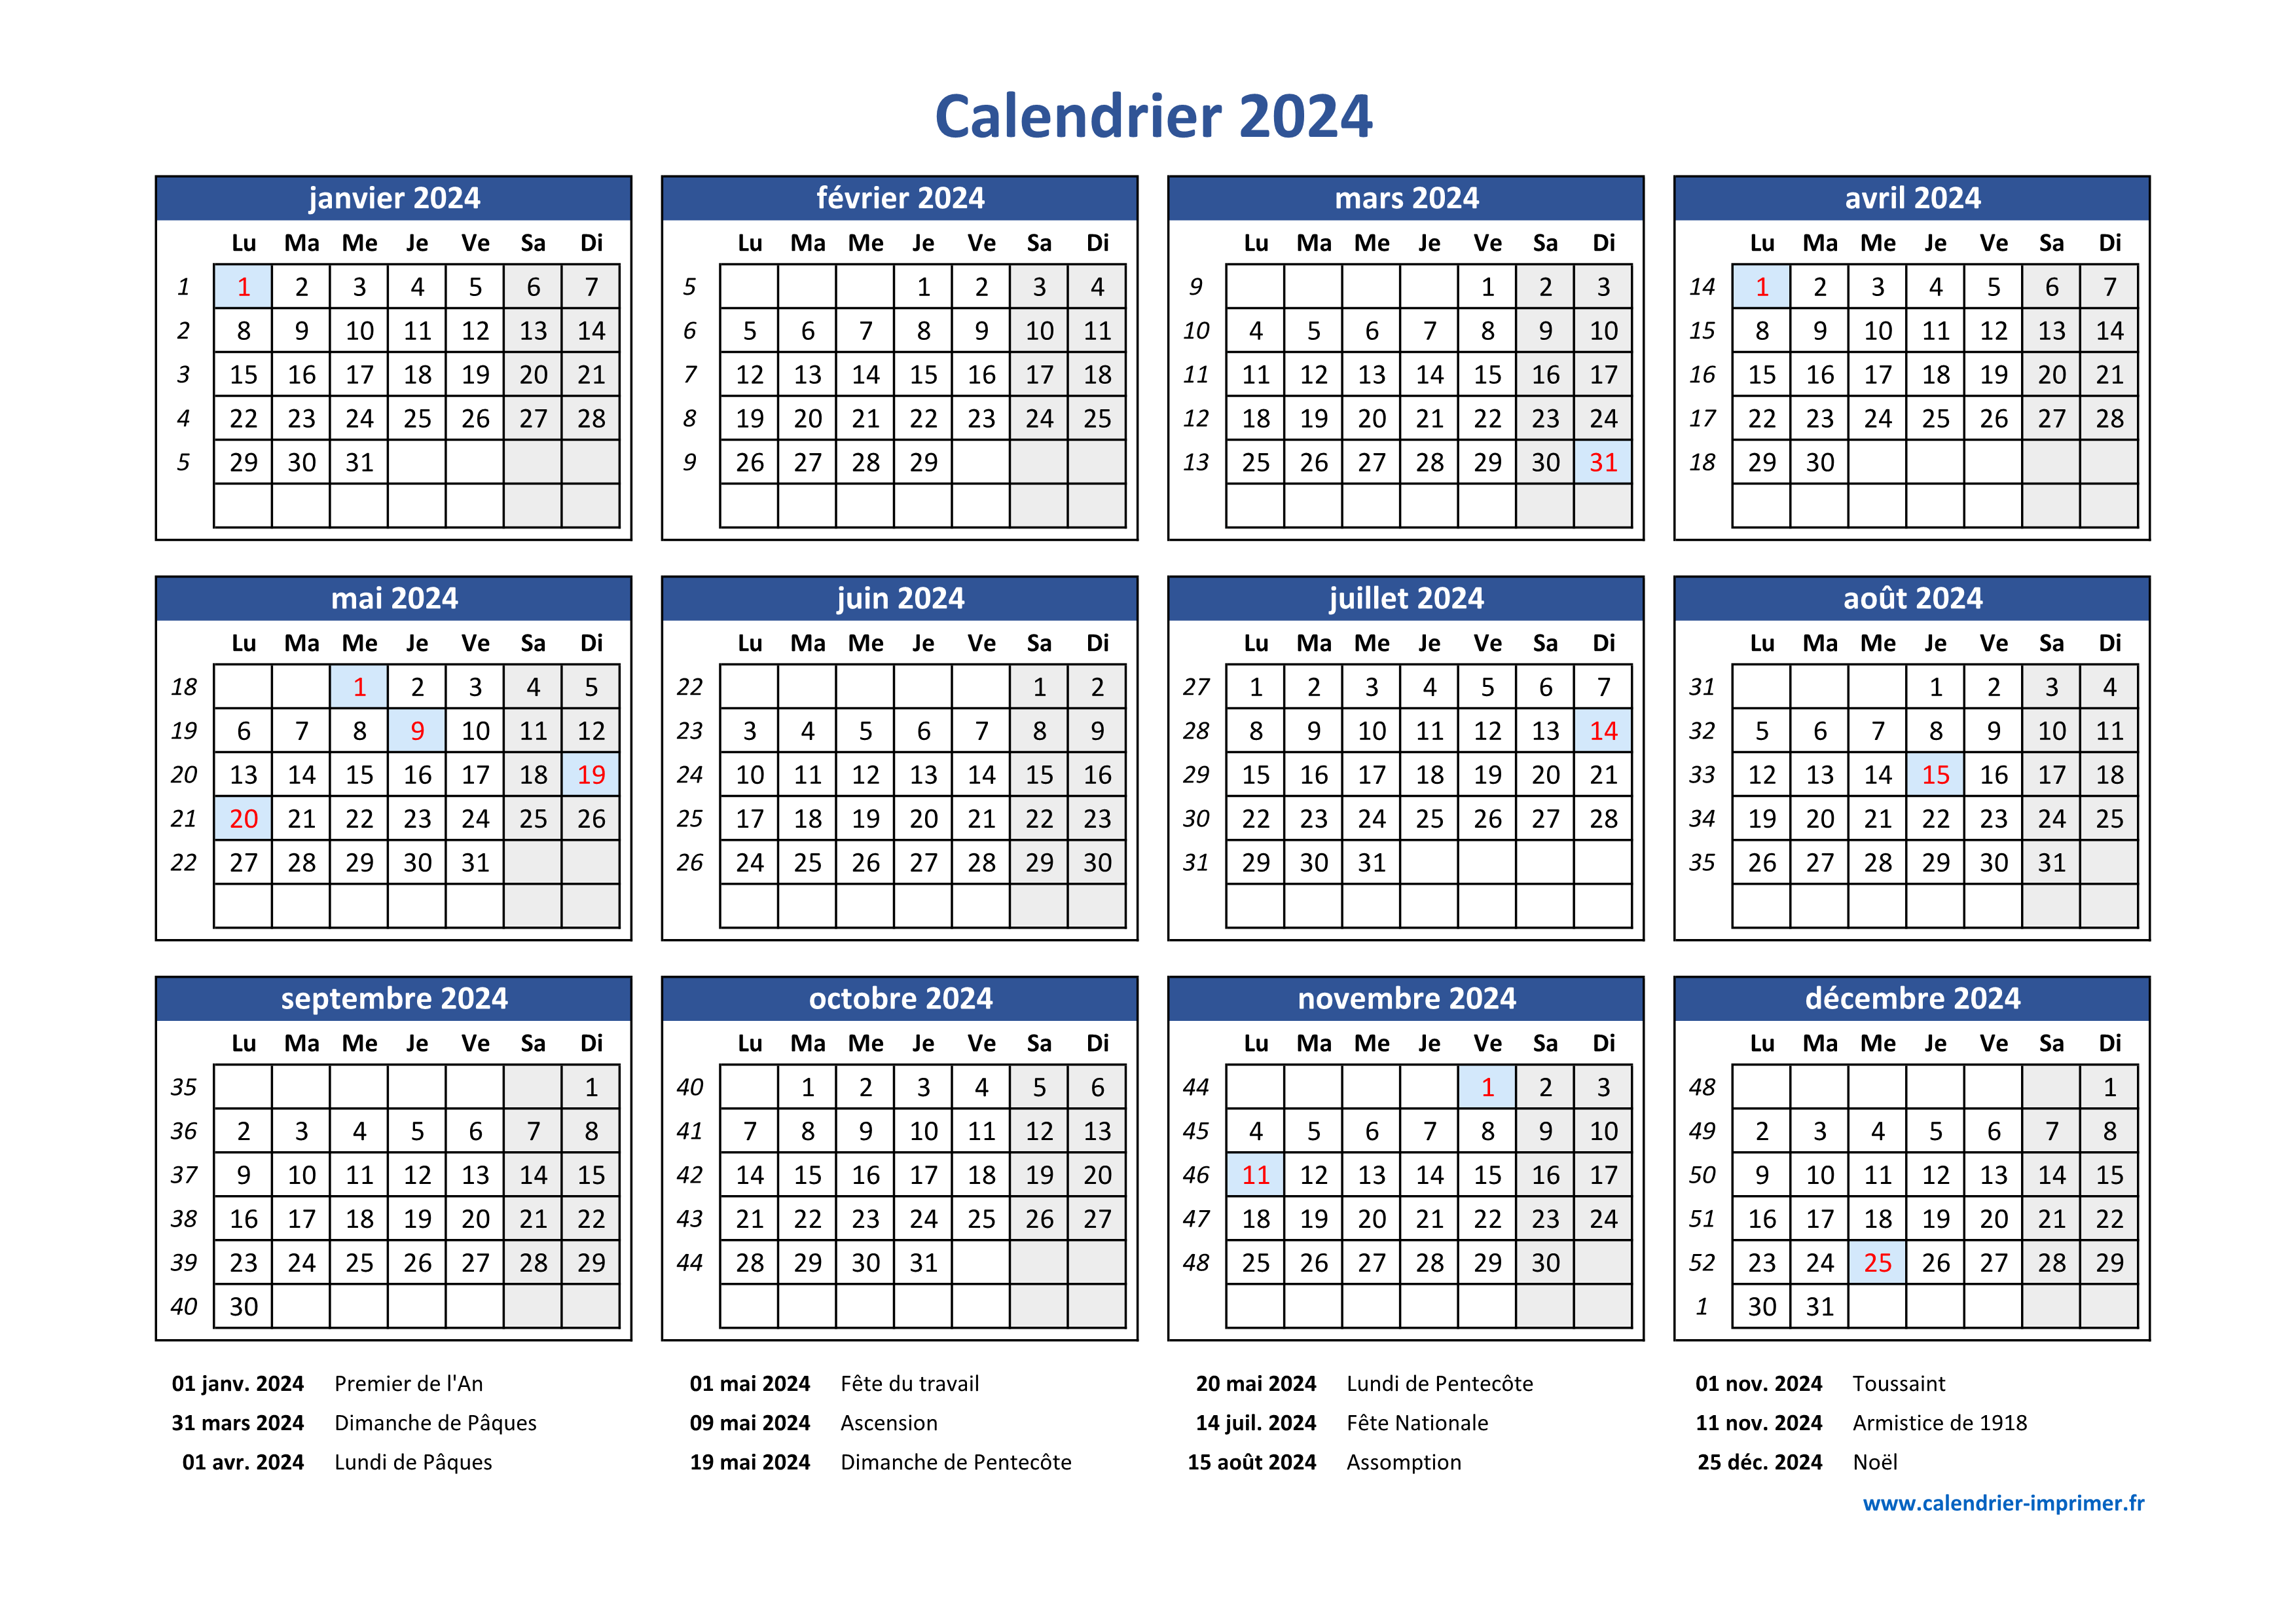 Calendrier 2024 : le calendrier gratuit de l'année 2024 avec les